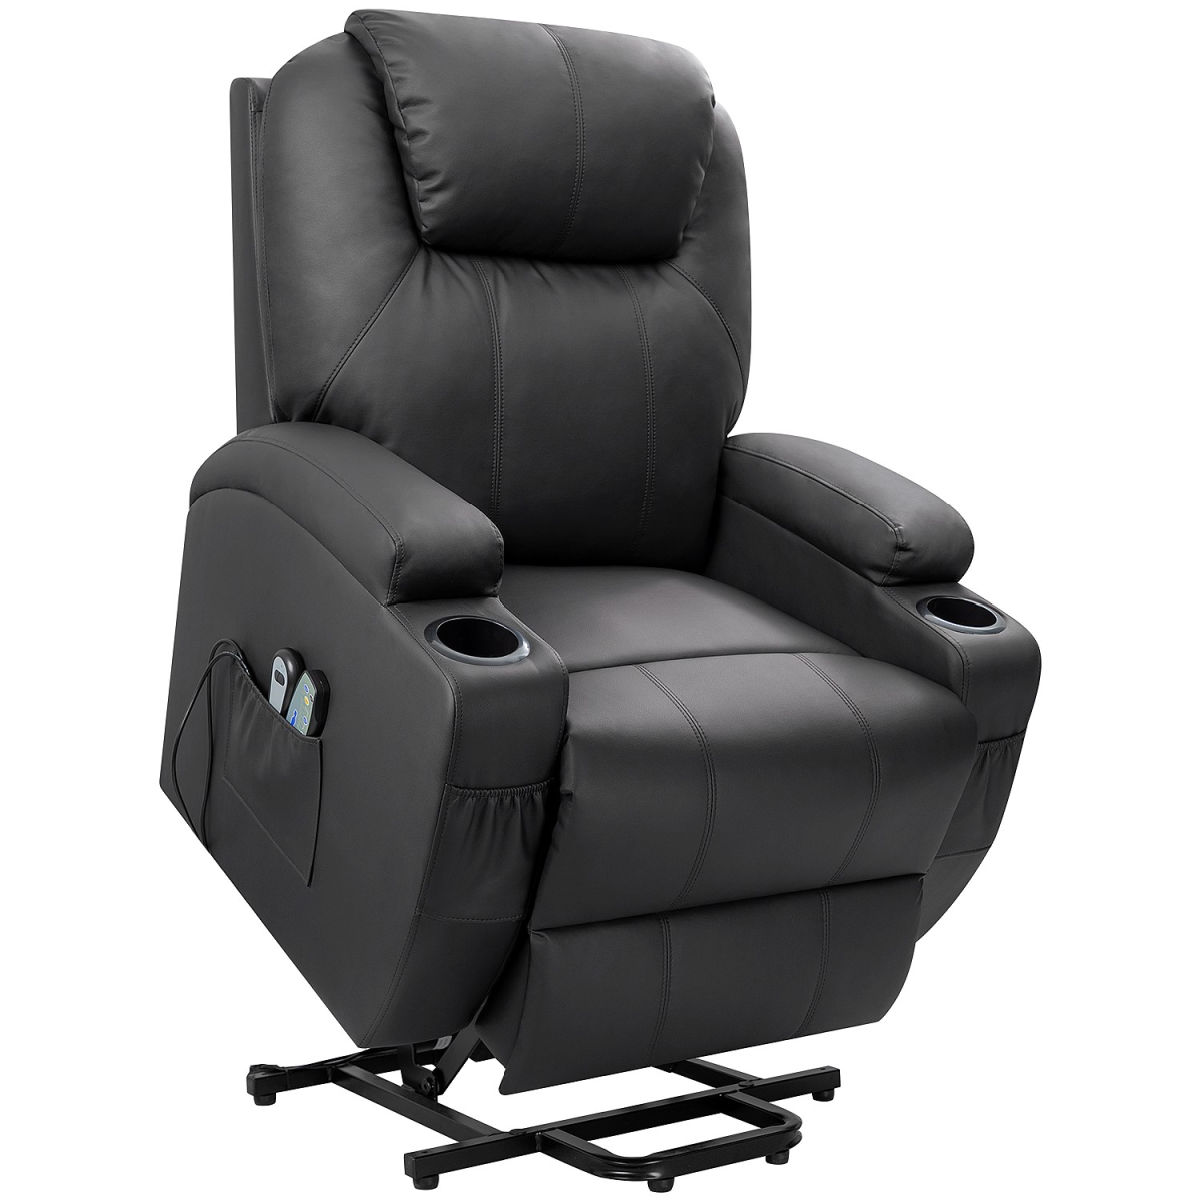 Walnew Power Lift Massage Recliner Chair